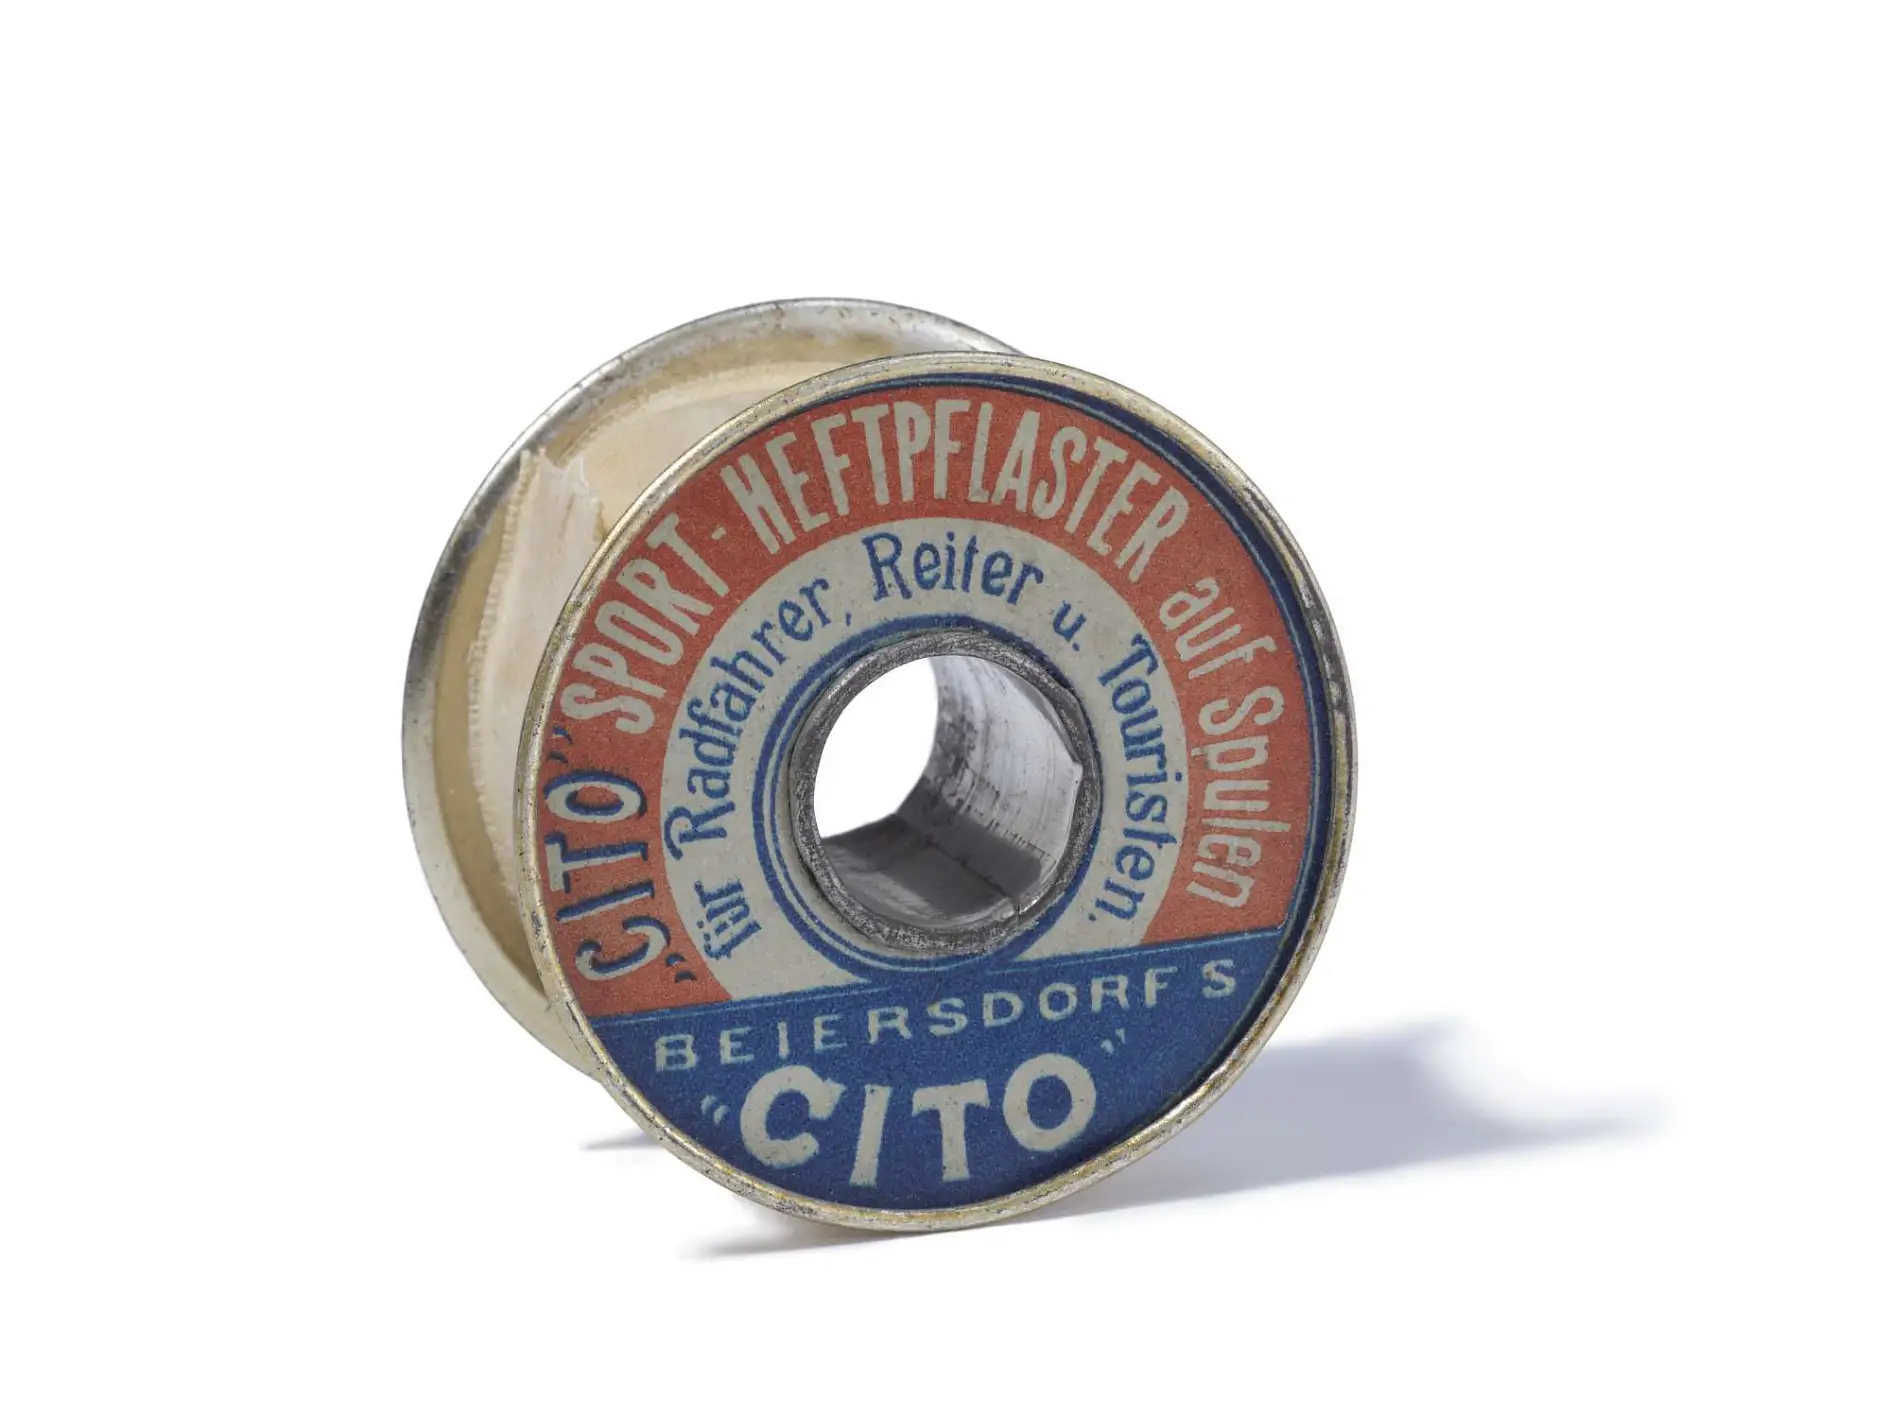 Plaster sportowy Cito z 1896 roku to pierwsza na świecie techniczna taśma klejąca.